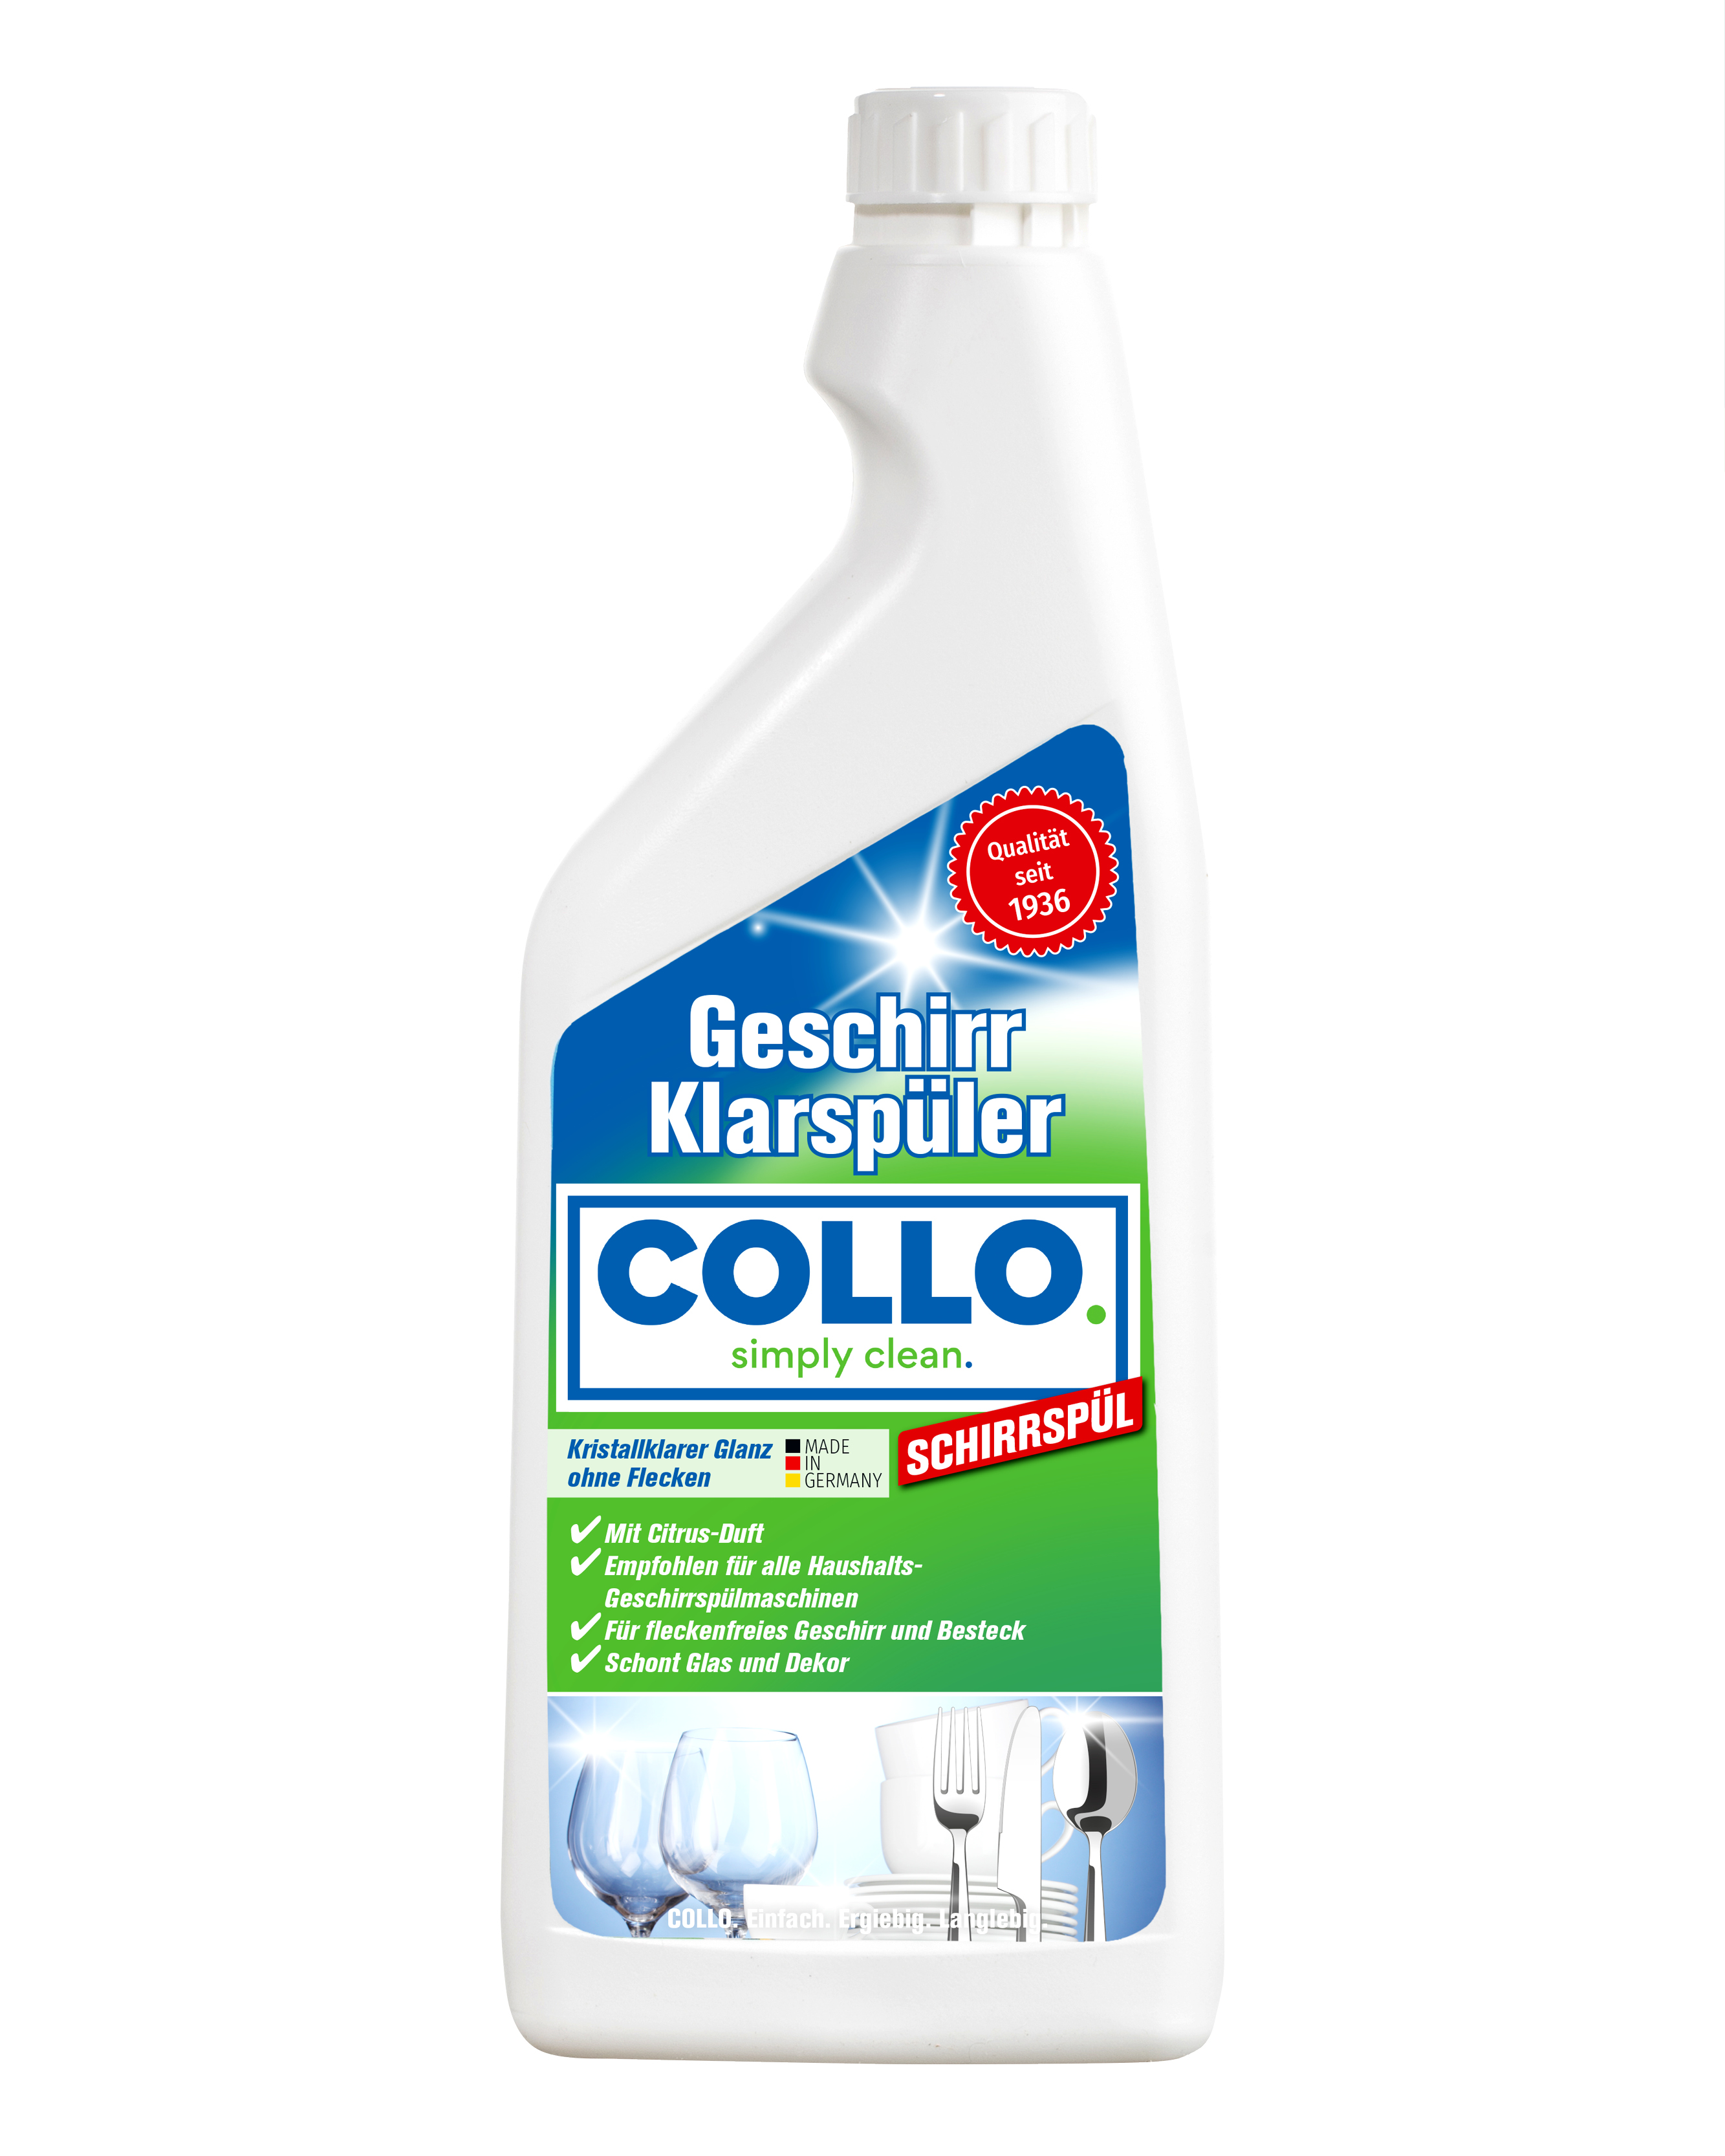 Der sparsame Klarspüler von COLLO sorgt für effiziente Spülmaschinenarbeit und strahlendes Geschirr, was Reparatur- und Neukaufkosten minimiert.